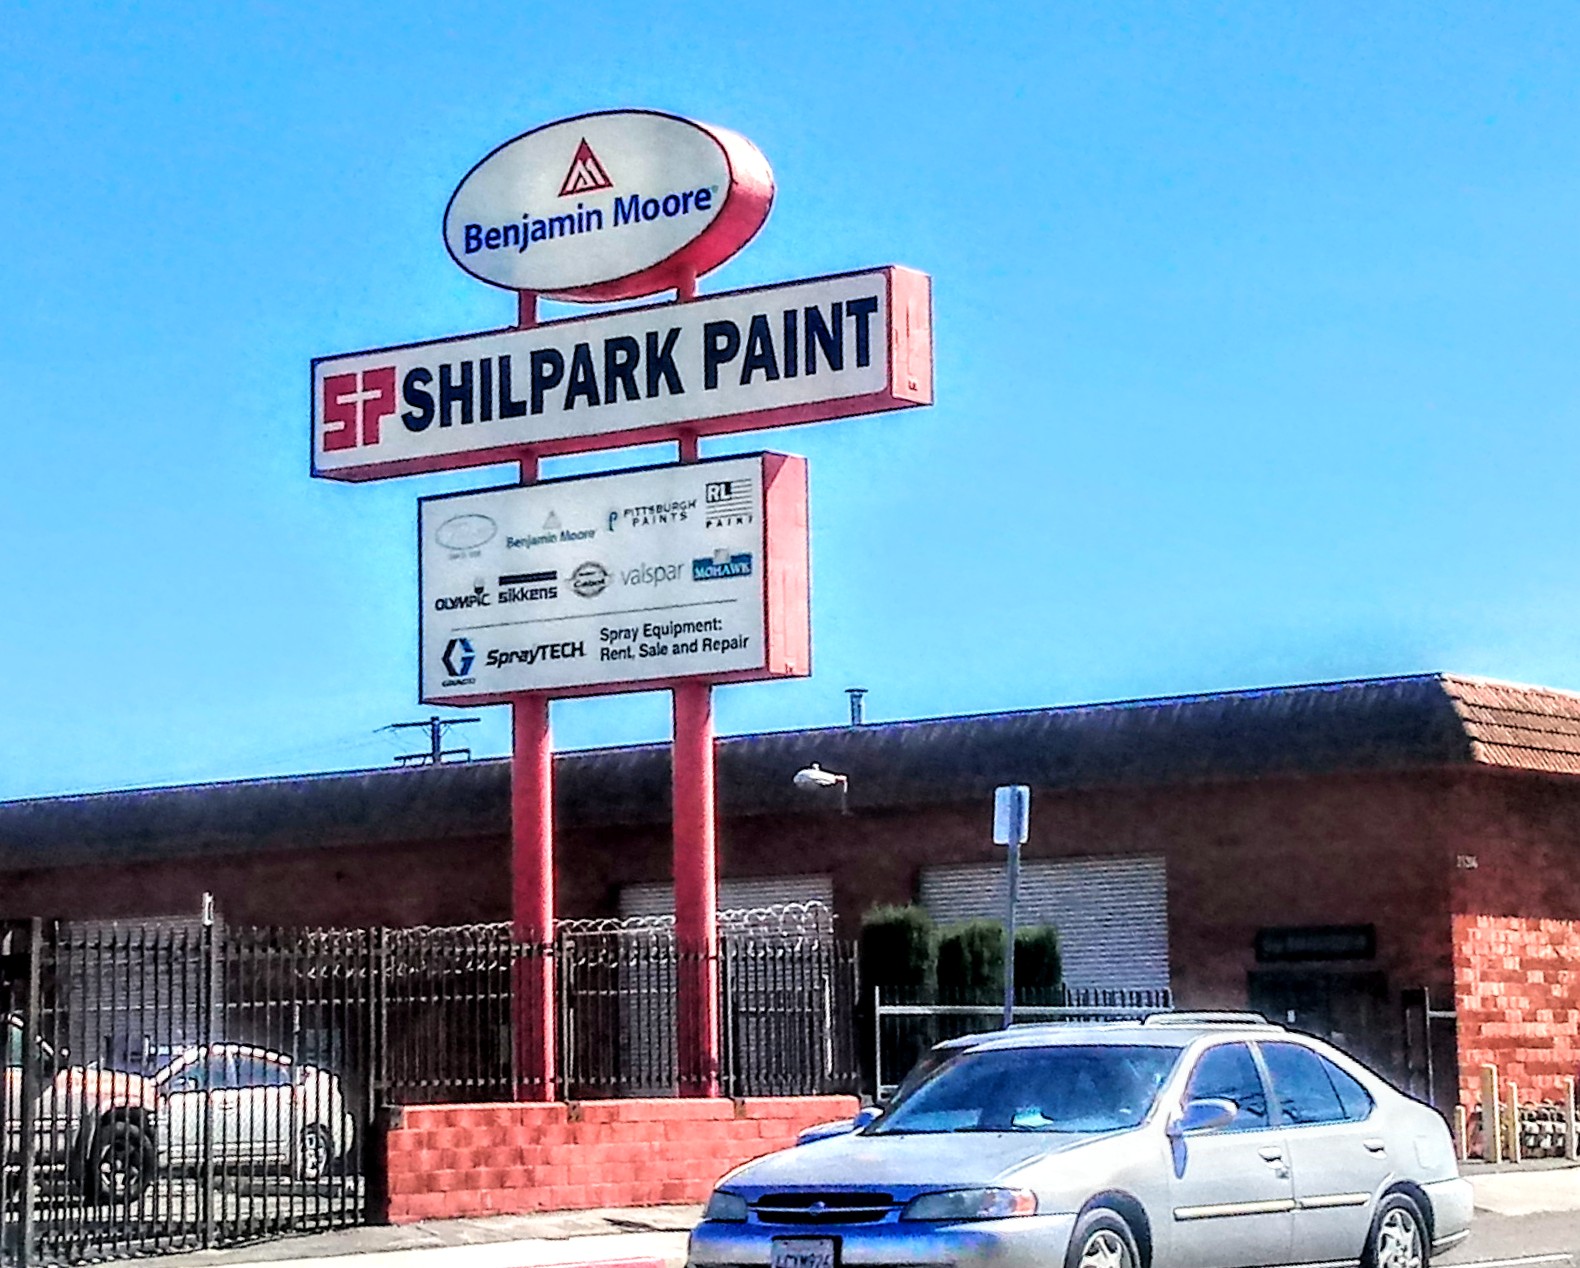 Shilpark Paint - Lawndale